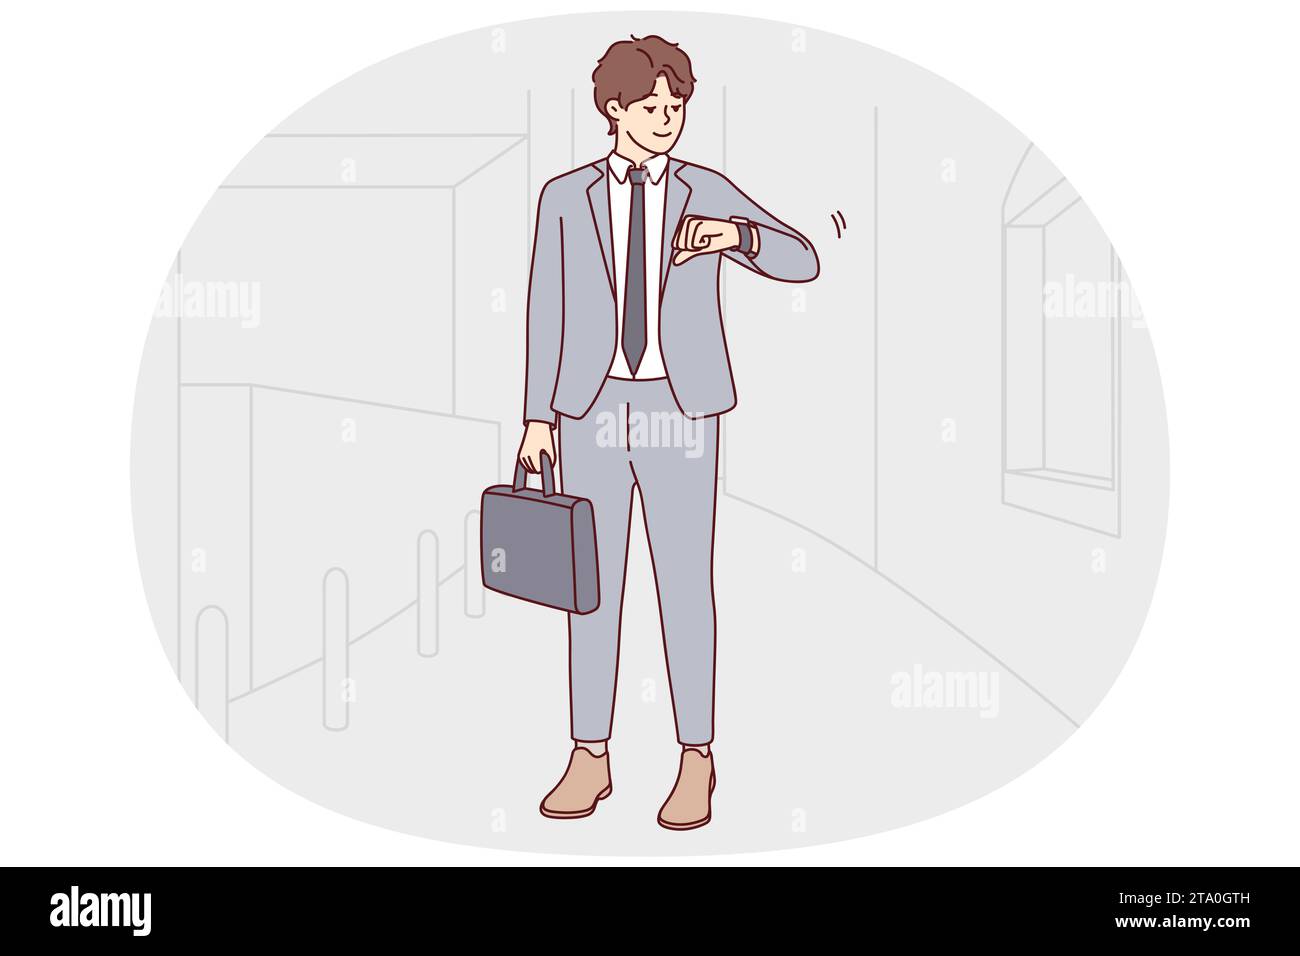 Der junge Geschäftsmann im Anzug schaut sich die Uhrzeit an. Männlicher Mitarbeiter oder Arbeiter denkt an die Einhaltung der Frist oder an einen fehlenden Termin. Zeitmanagement. Vektorgrafik. Stock Vektor